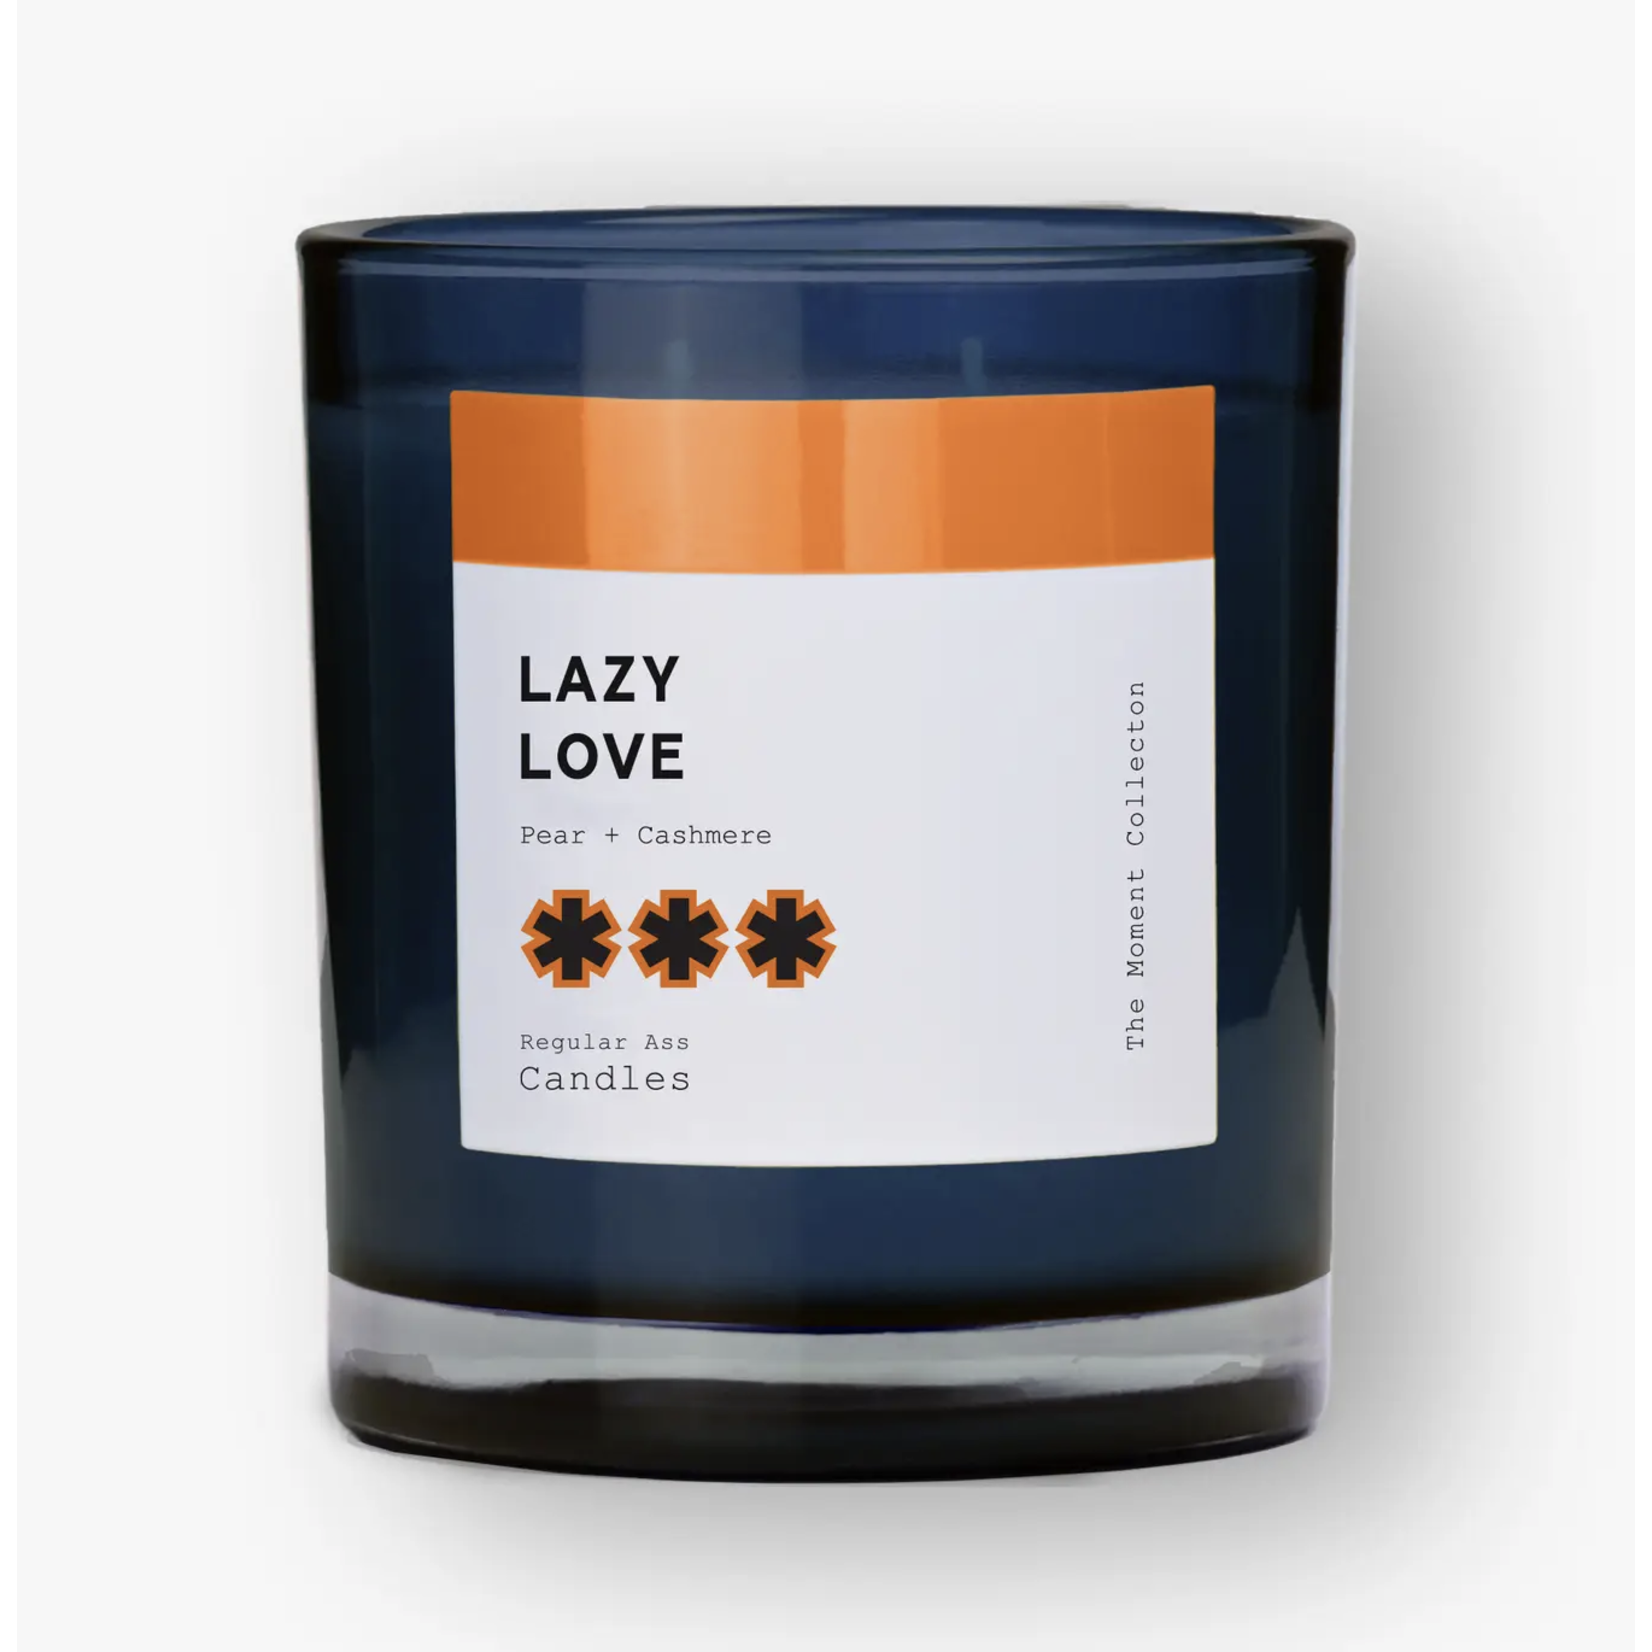 Regular Ass Candles Lazy Love 11oz-Vanilla + Cashmere